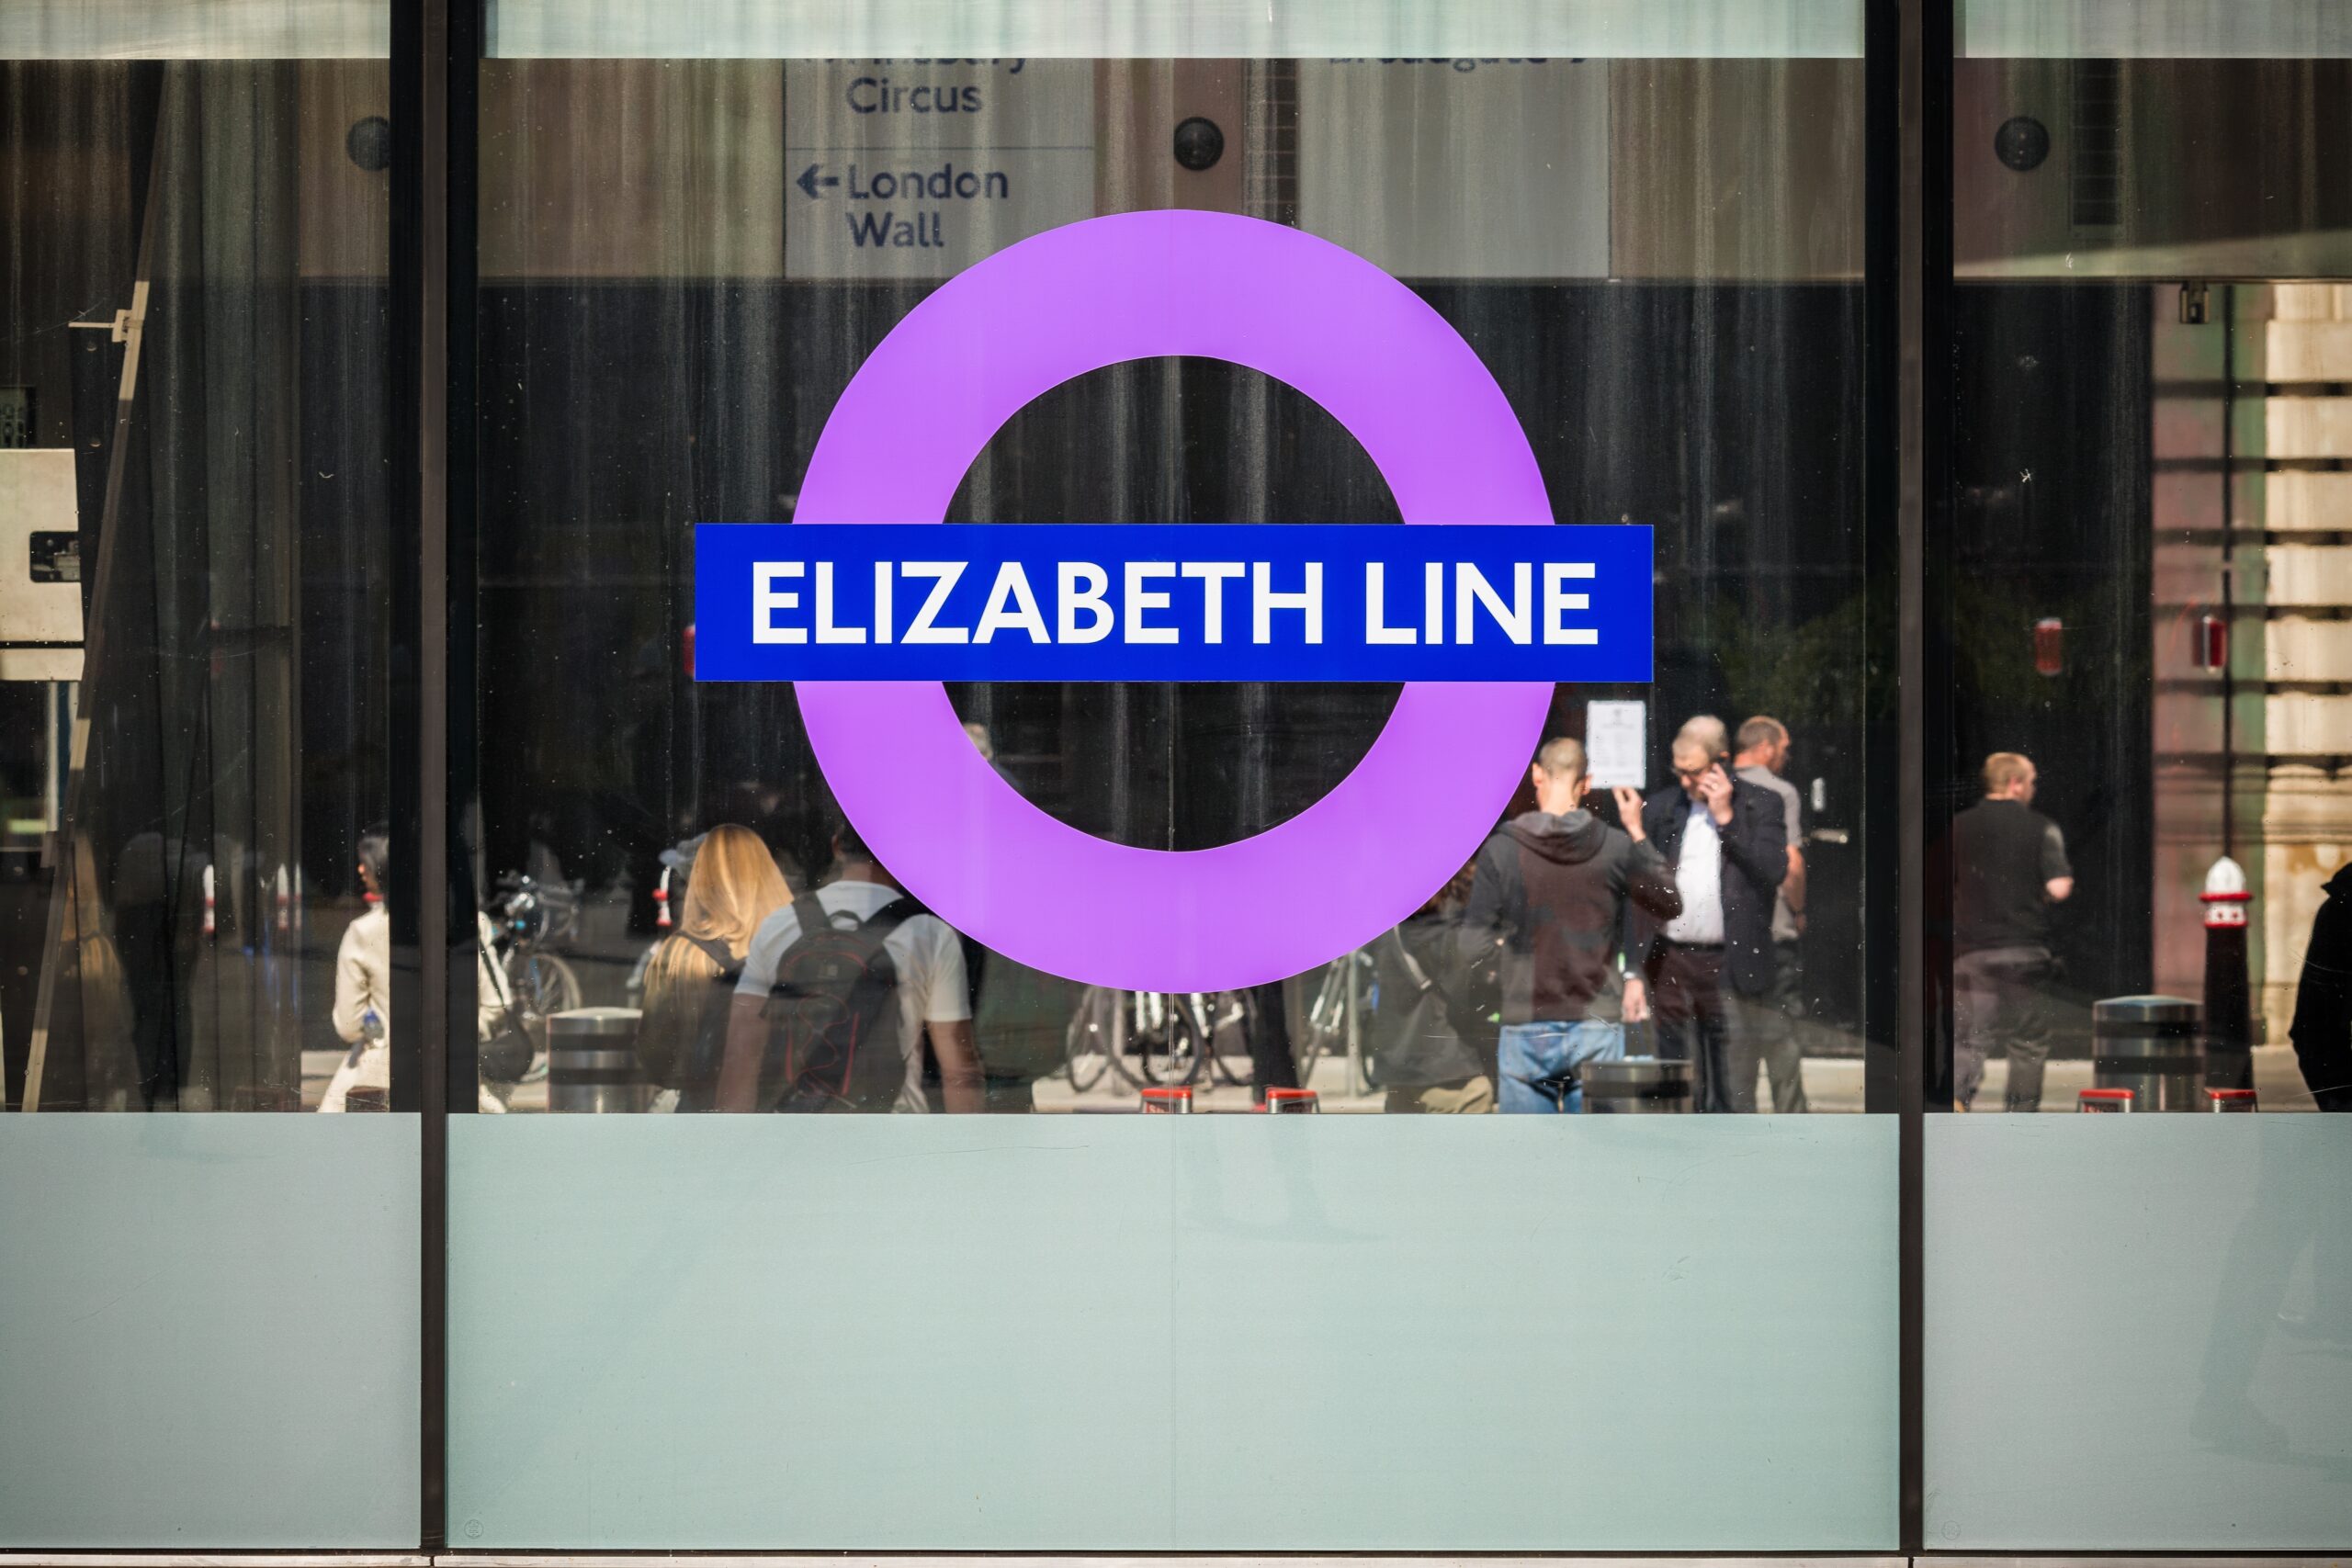 Elizabeth line roundel at Liverpool Street station